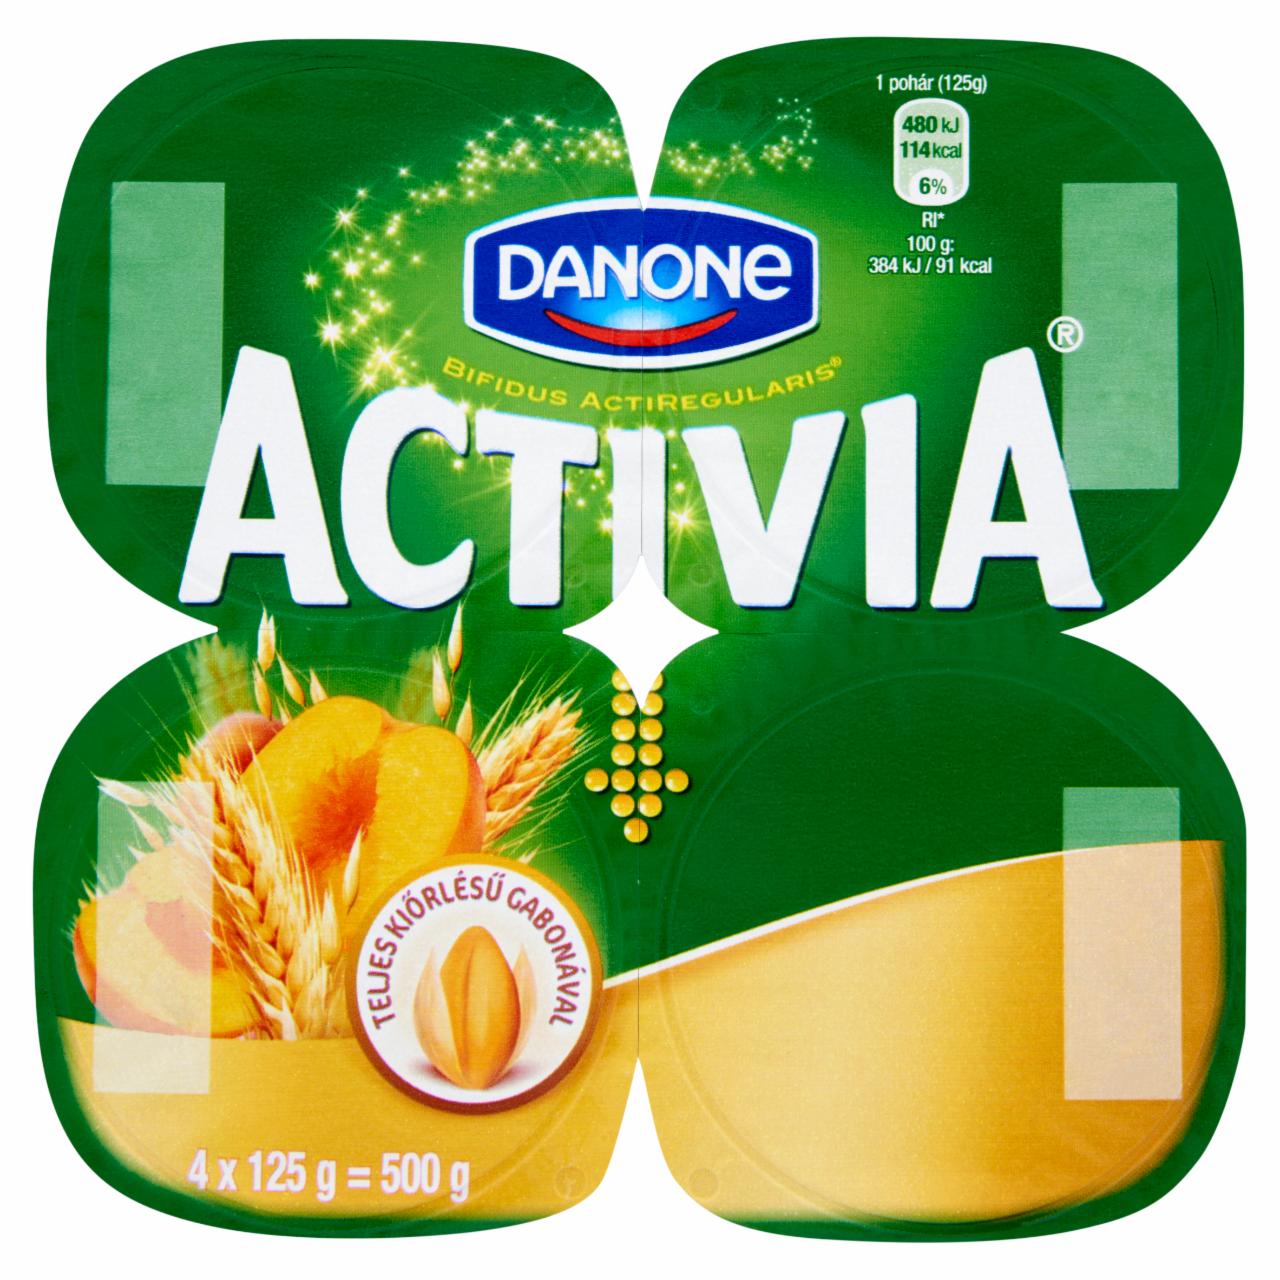 Képek - Danone Activia élőflórás, zsírszegény joghurt őszibarackkal, mazsolával és gabonával 4 x 125 g